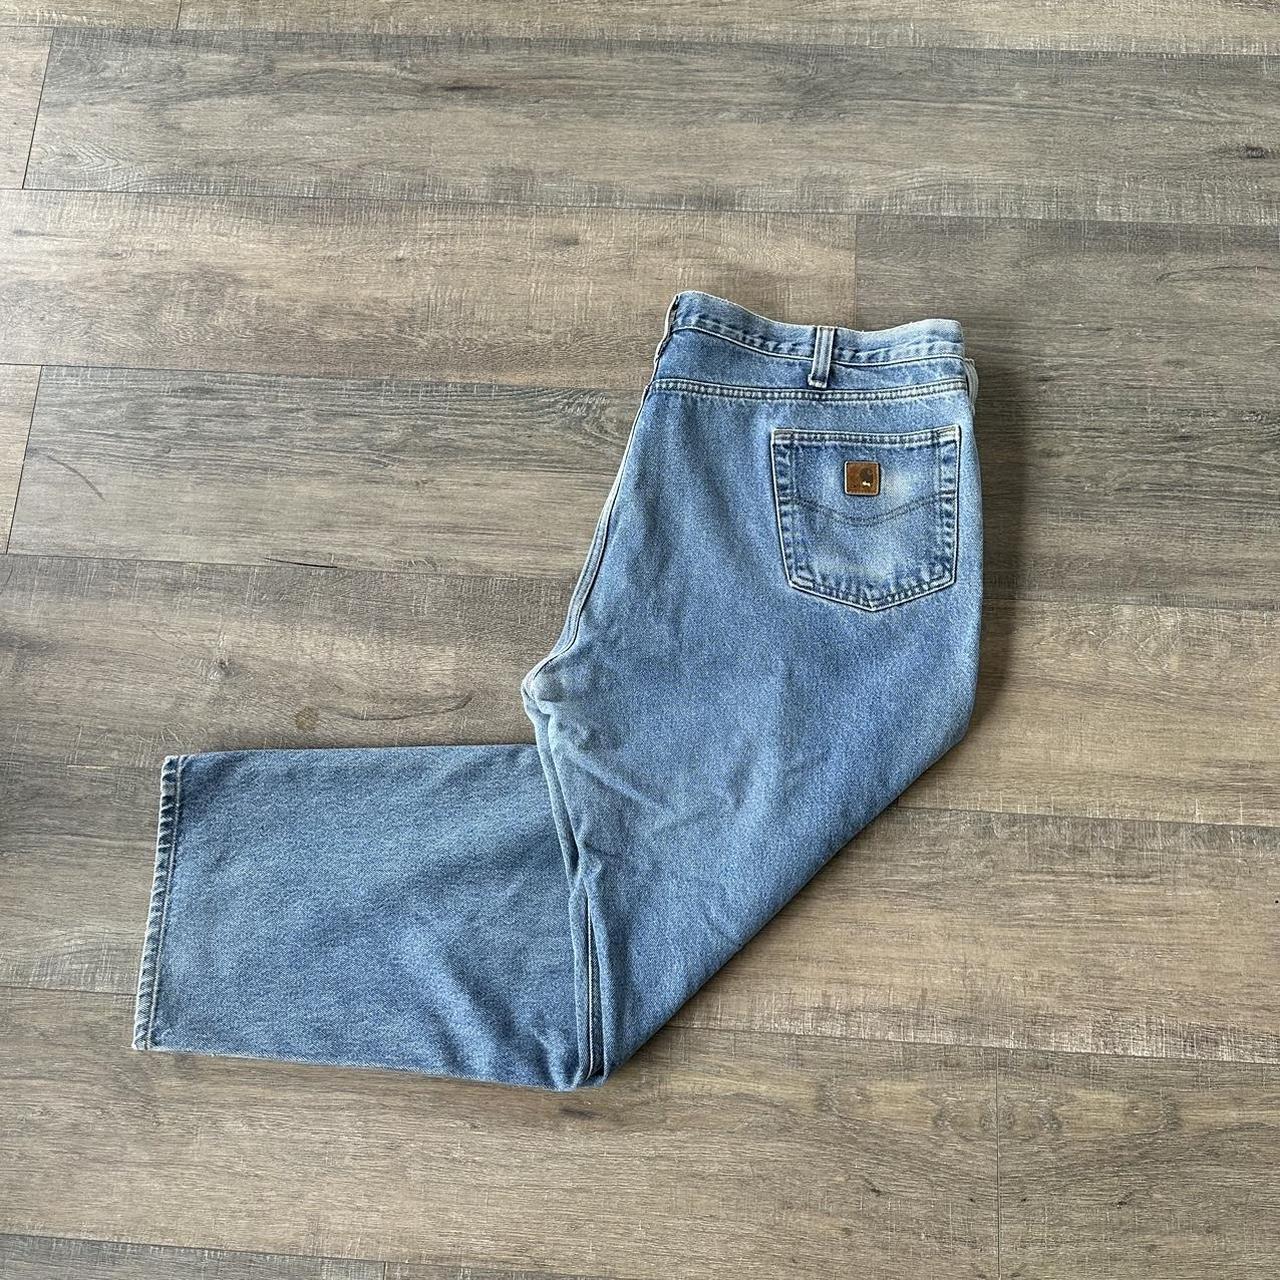 carhartt jeans super big and baggy 46x30 - Depop